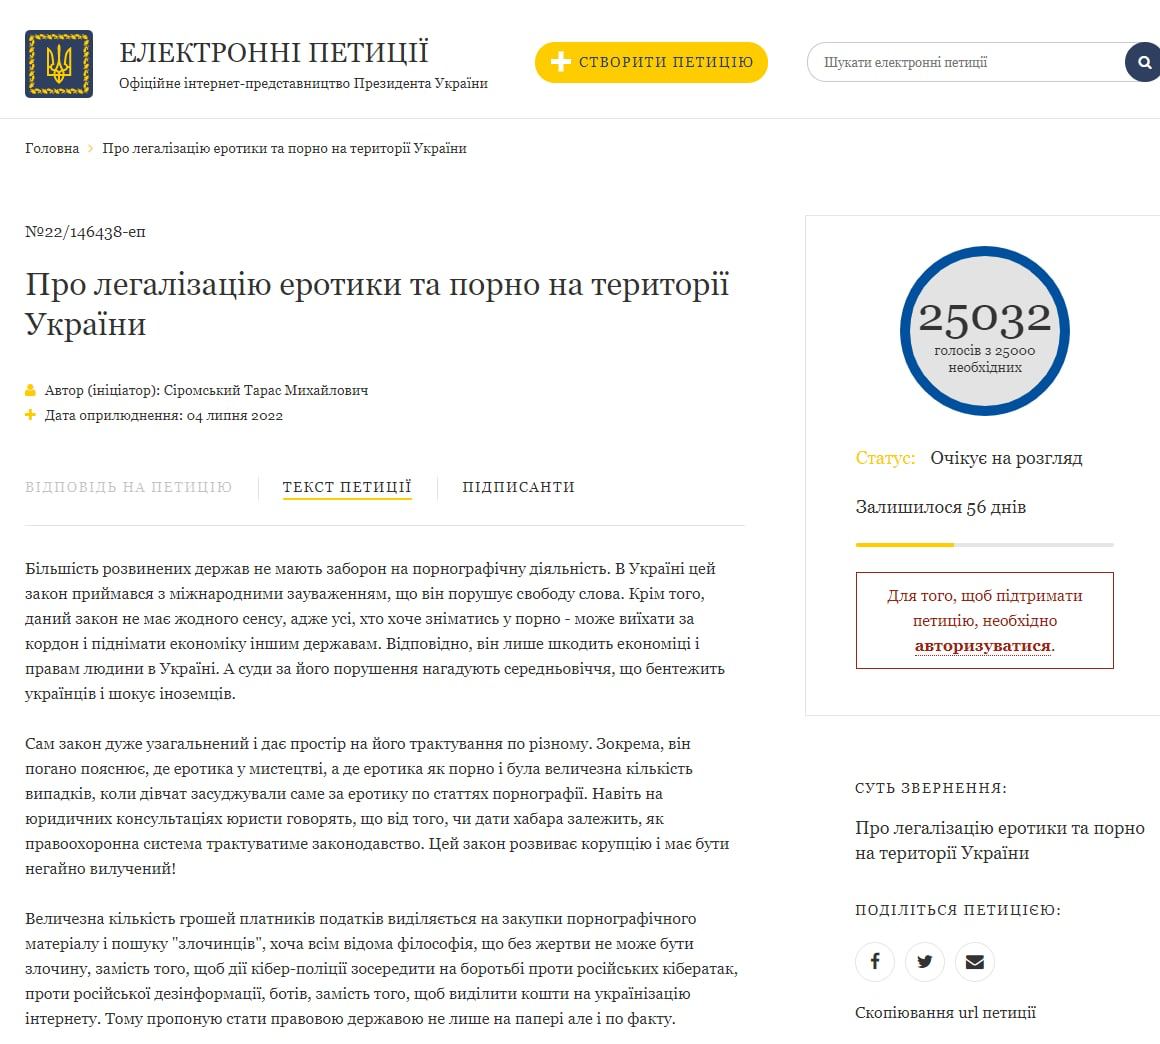 Зеленский должен рассмотреть петицию о легализации порно и эротики, так как она набрала нужные 25 тысяч голосов